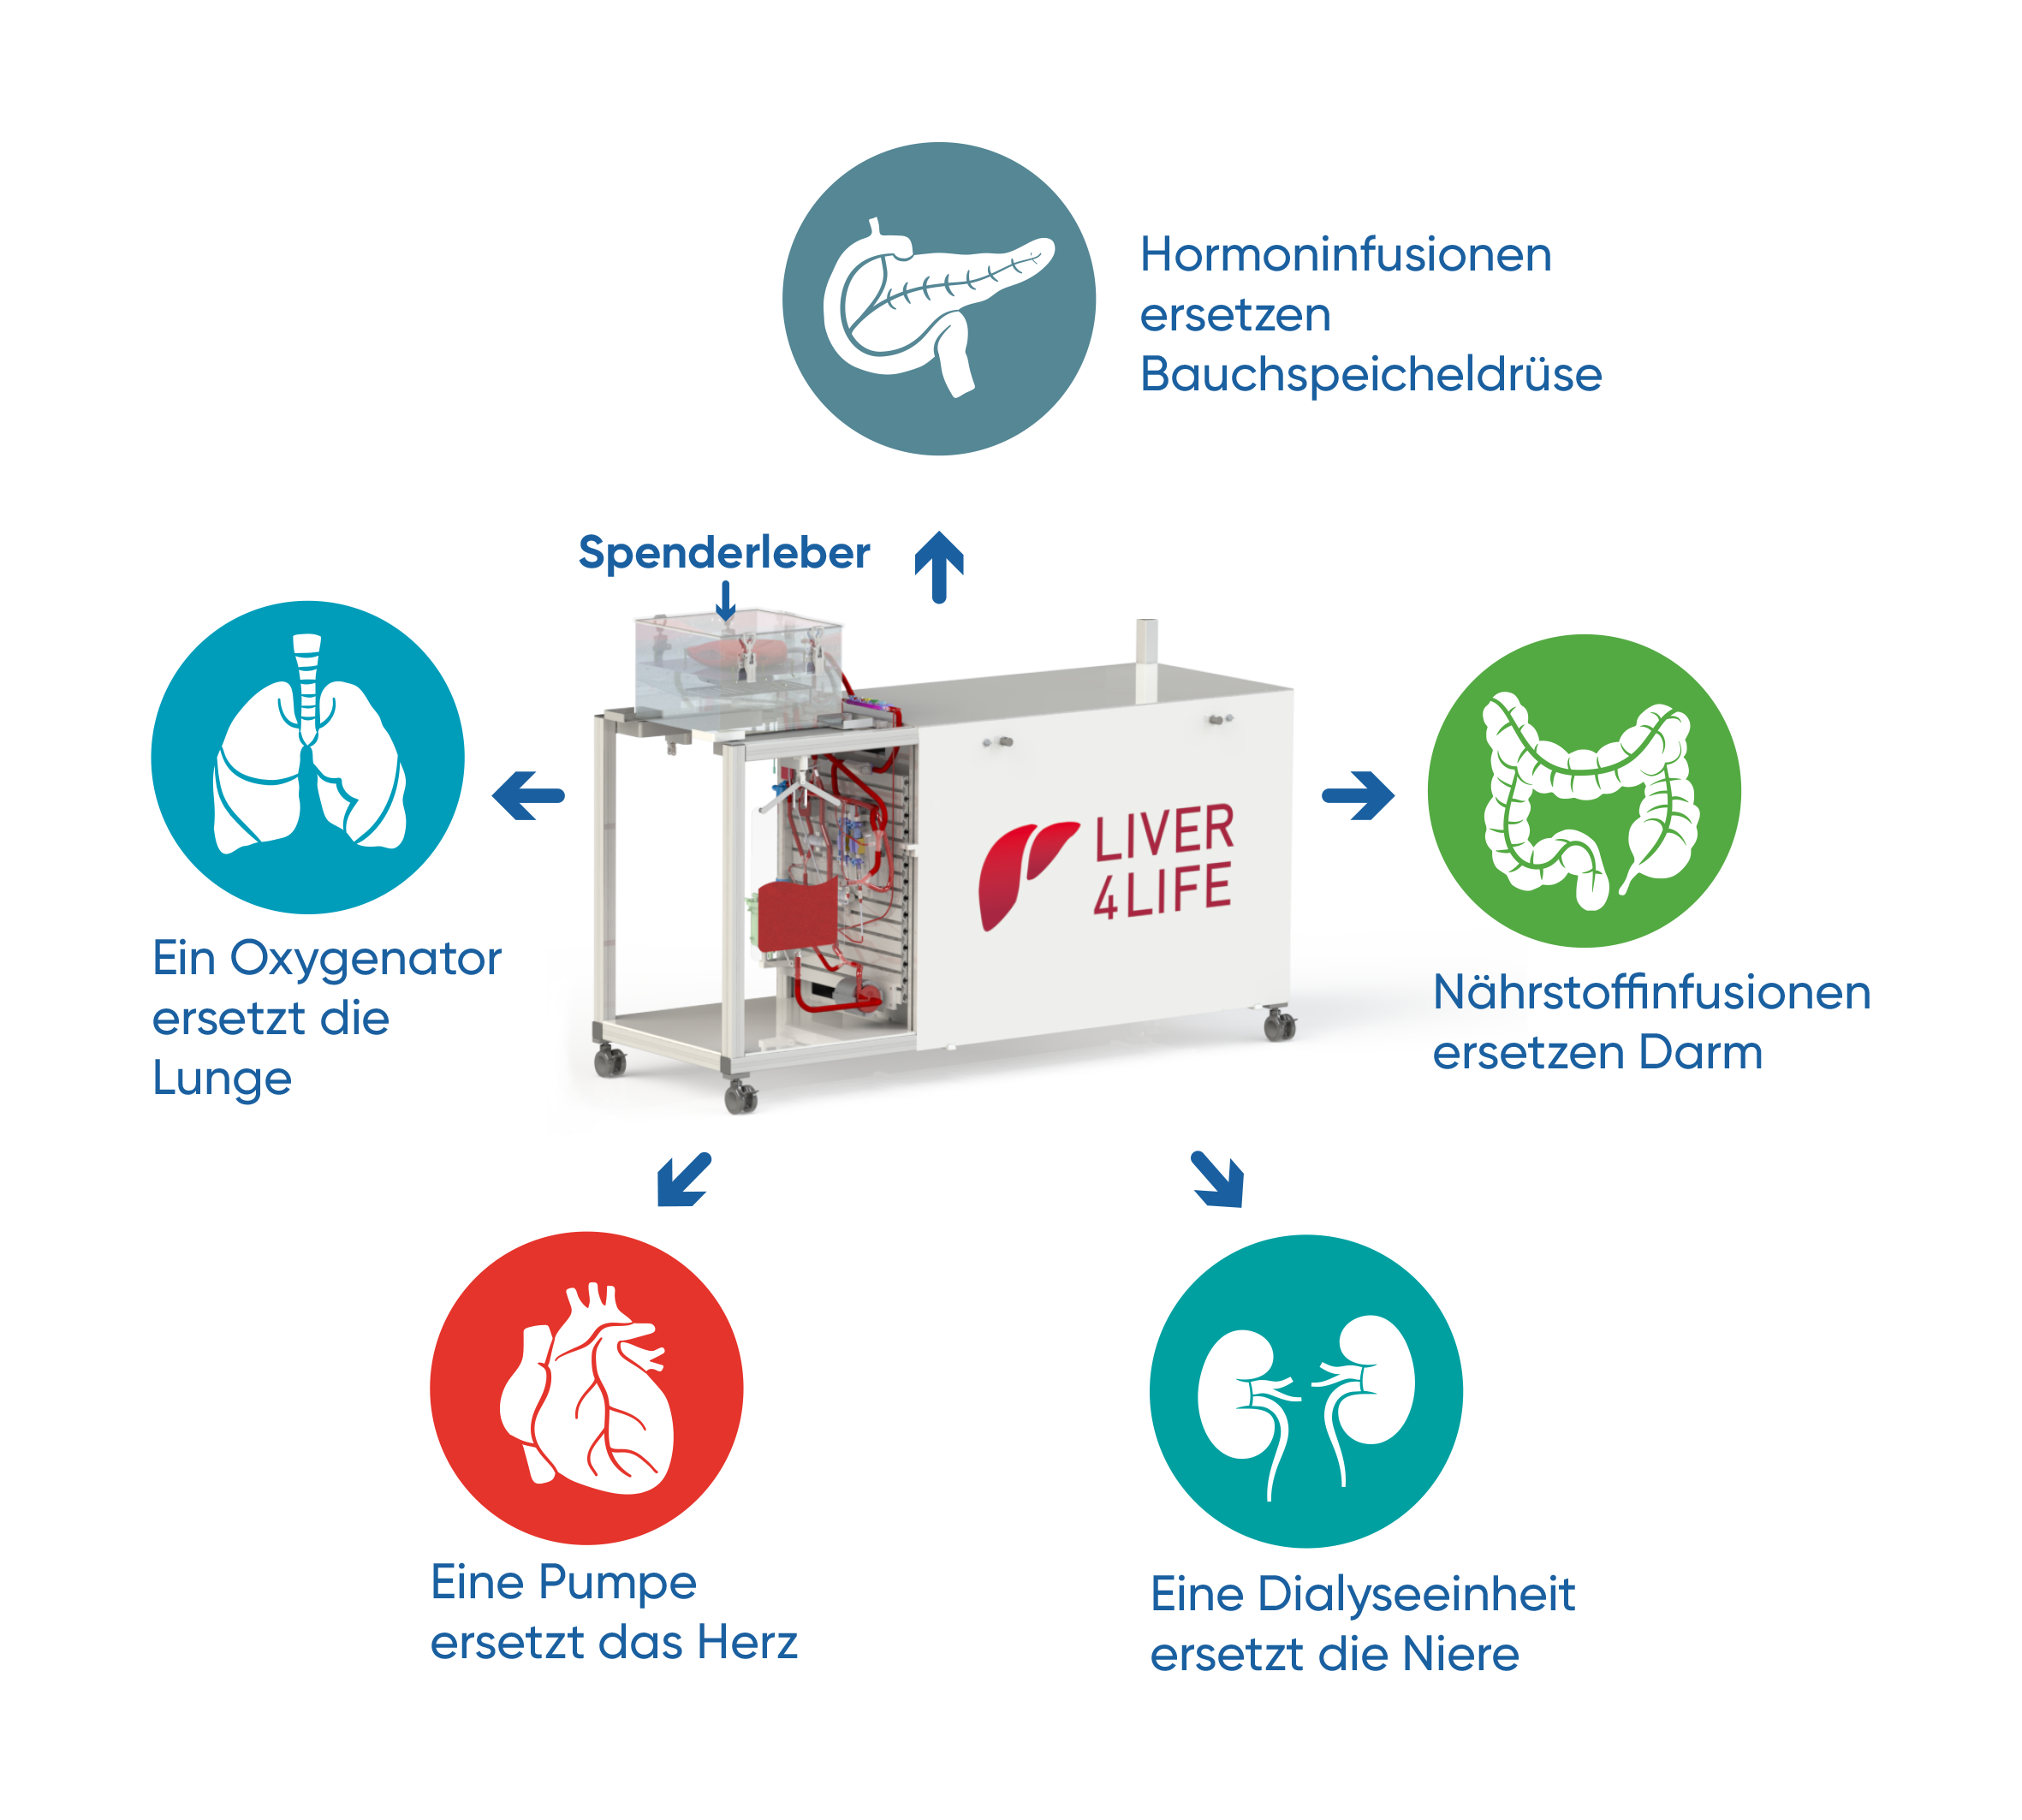 Die Perfusionsmaschine ersetzt die Funktion diverser Organe, um die Leber ausserhalb des Körpers am Leben zu halten.